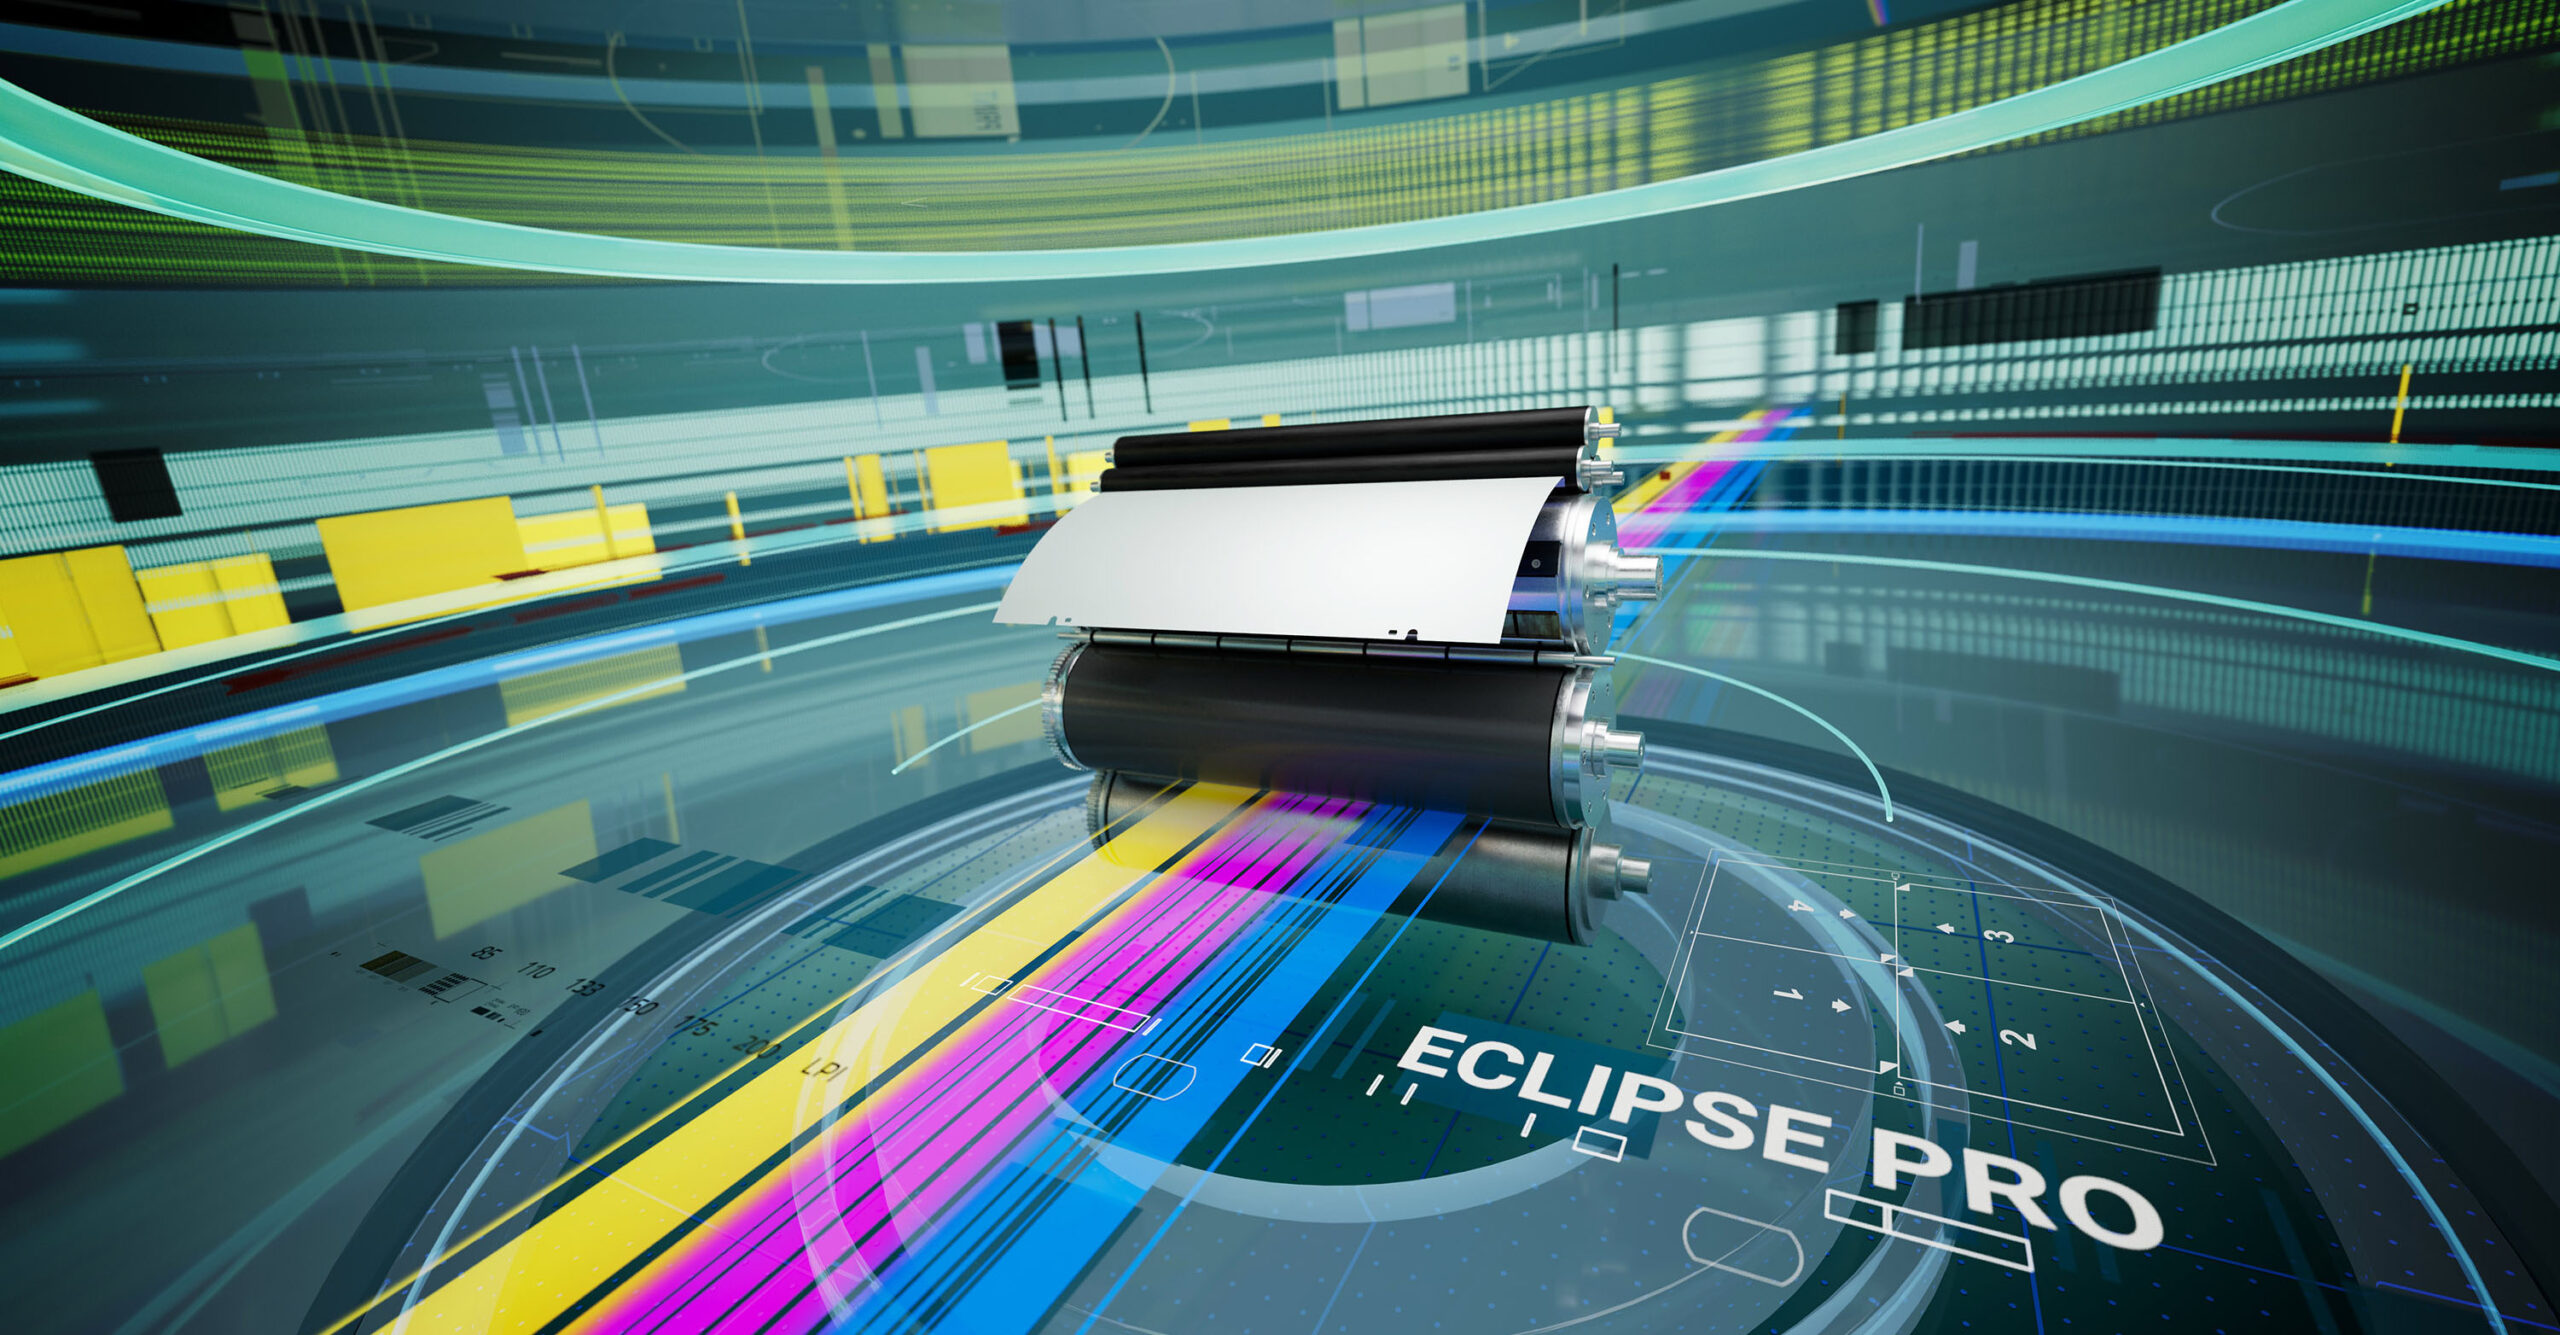 ECO3 stellt neue prozessfreie Offsetdruckplatte vor